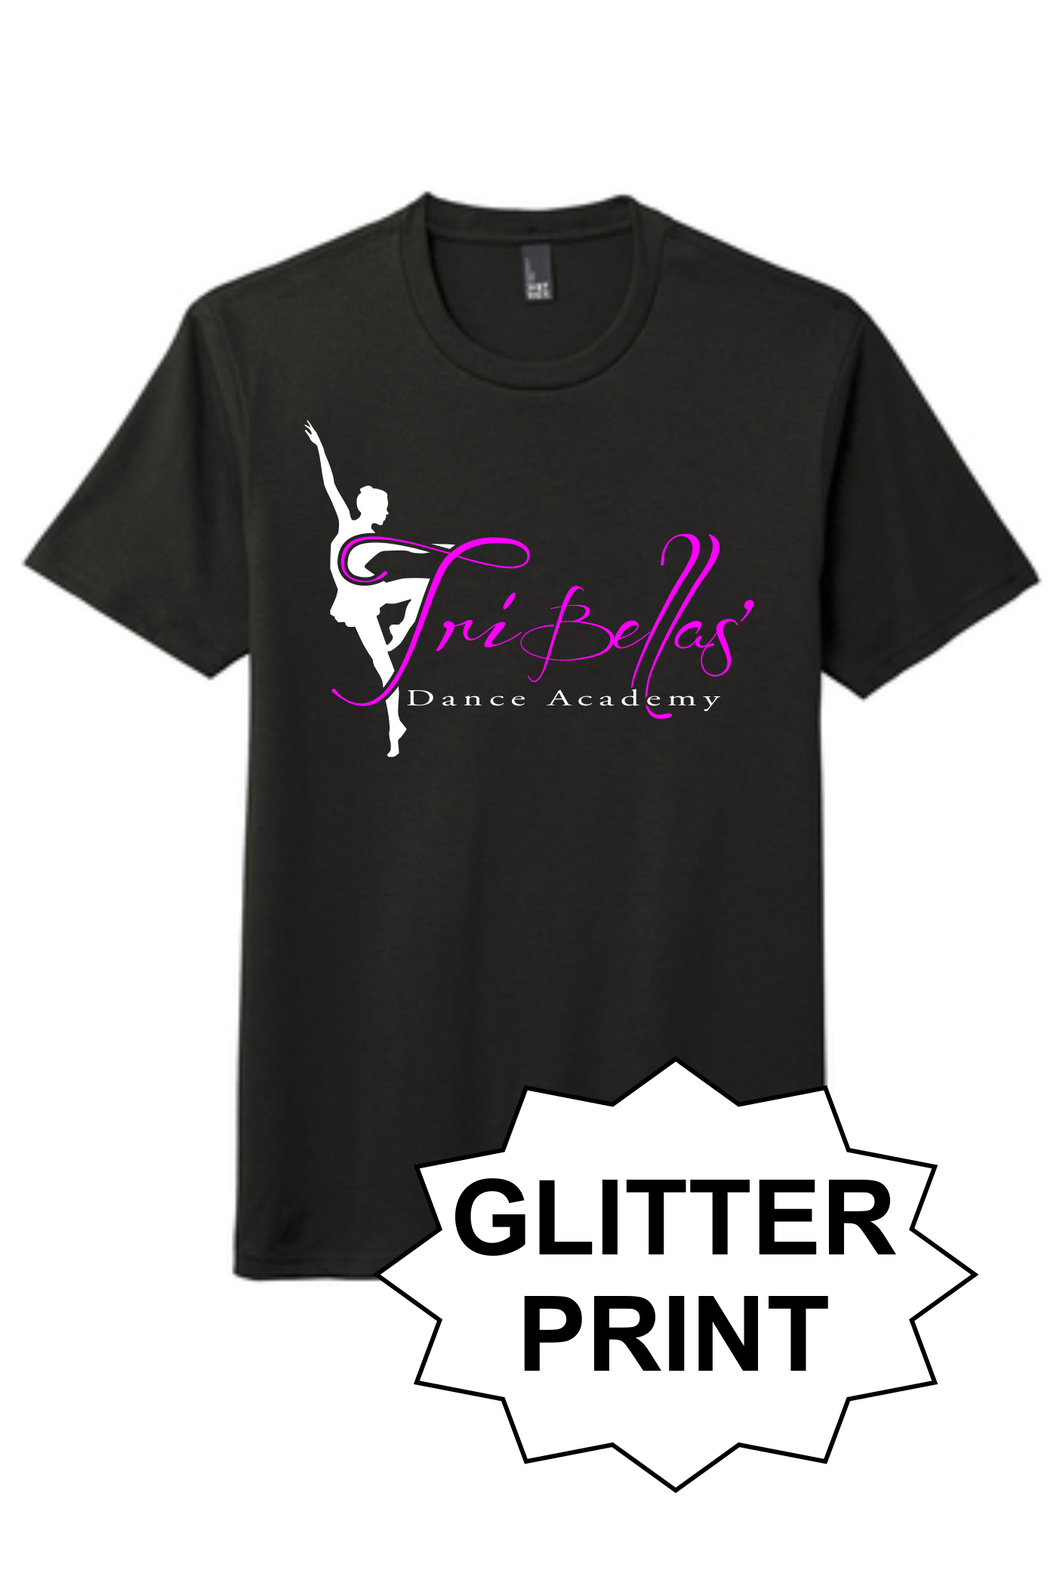 TriBellas - Glitter Print Triblend T-Shirt